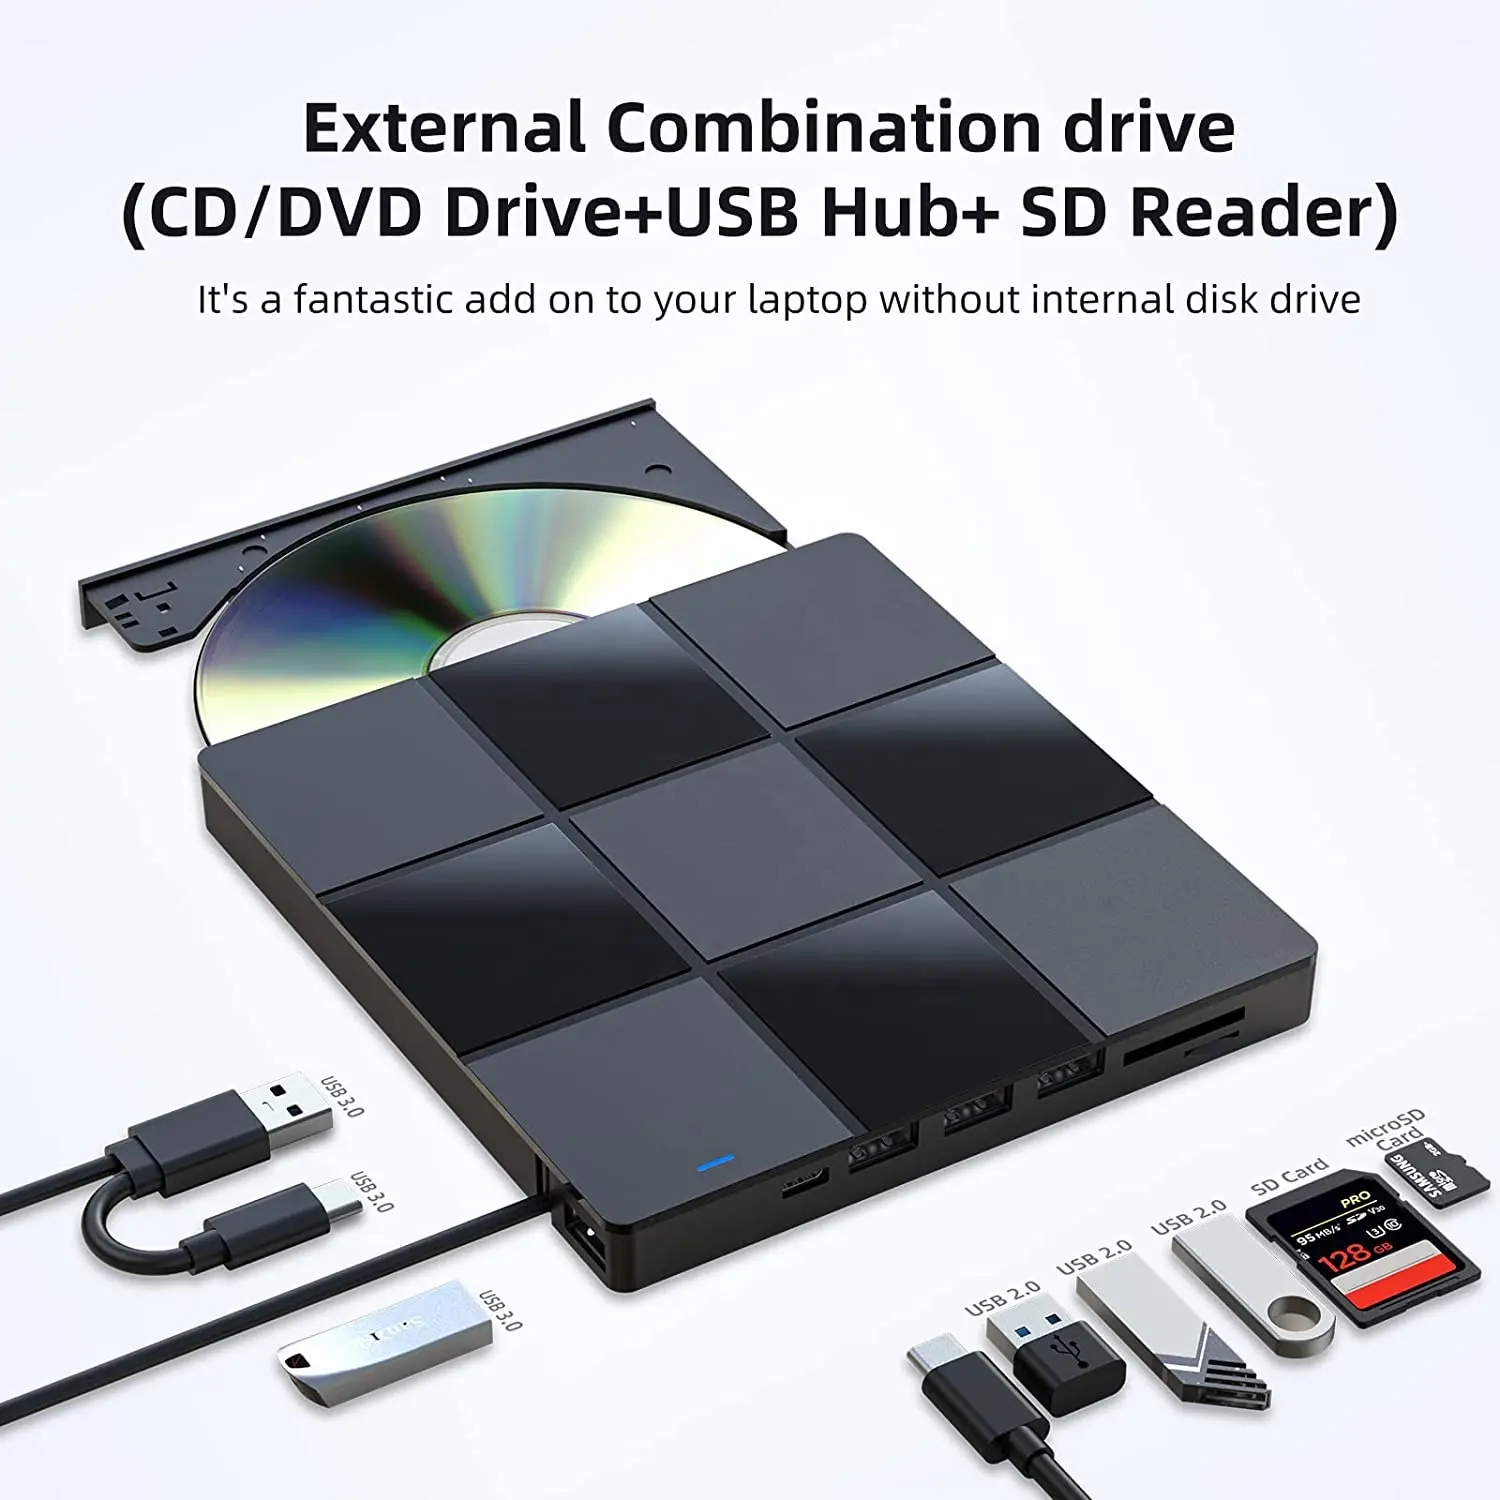 Novo equilíbrio externo usb 3.0 portátil, unidade de cd/dvd +/rw slim dvd rom regravador queimador para laptop, computador desktop